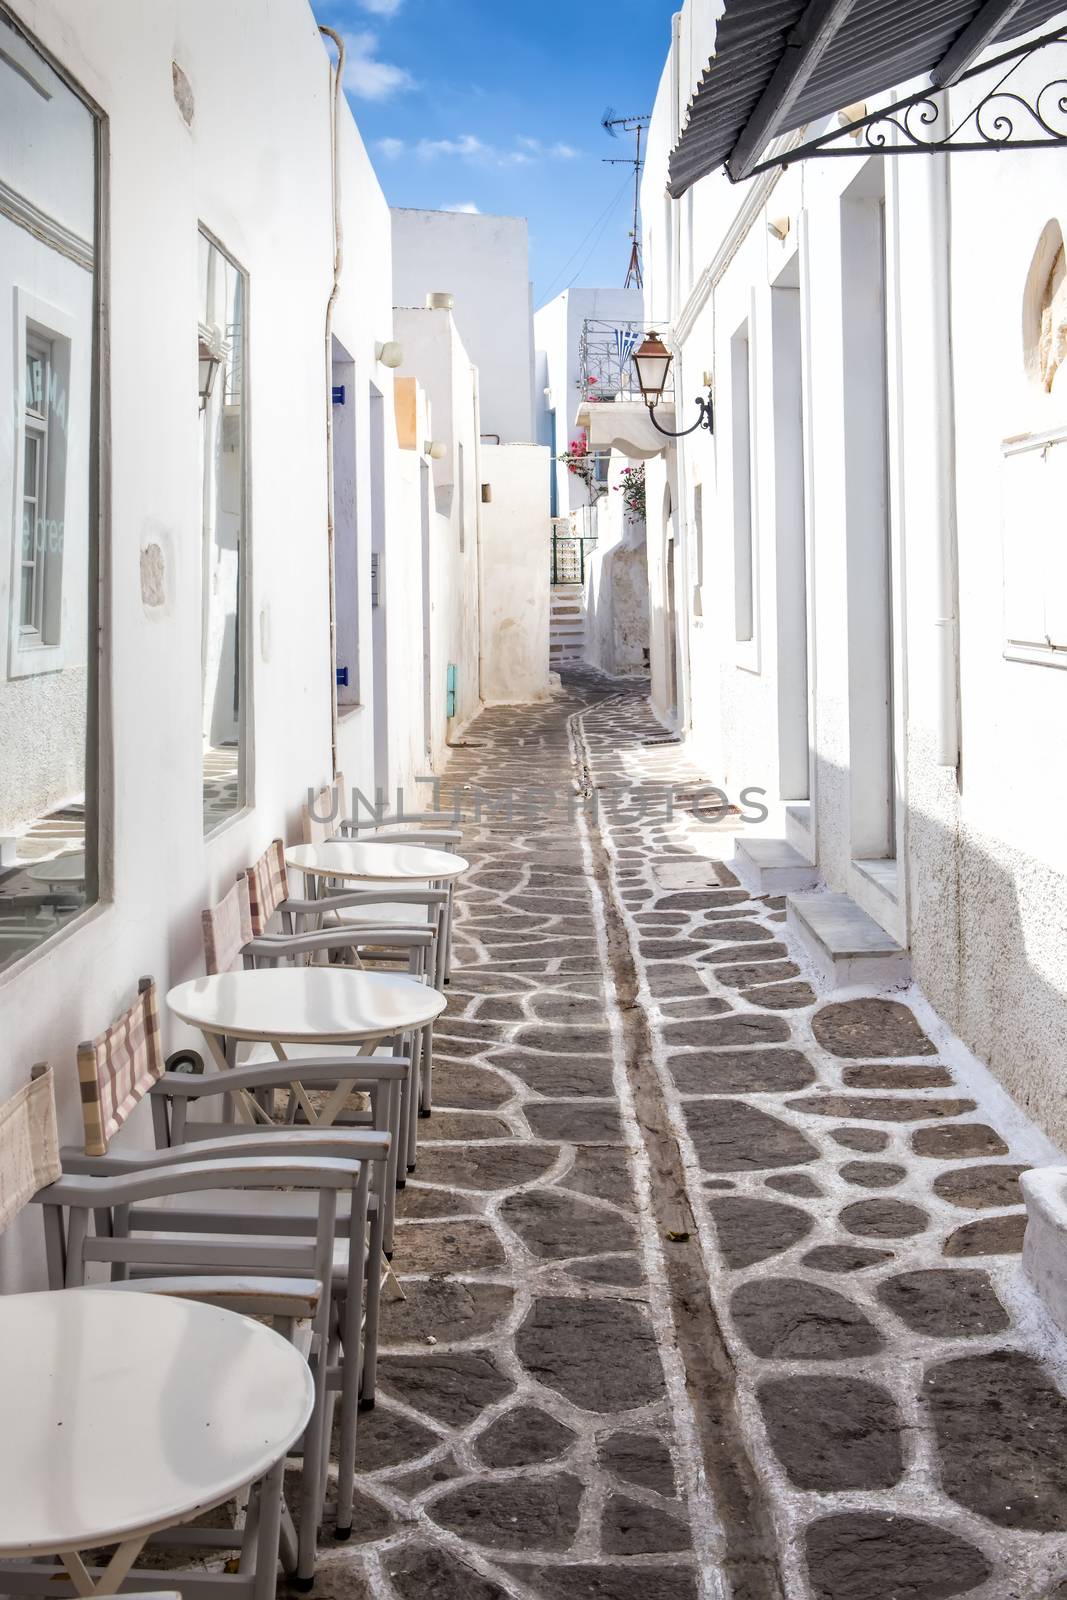 Narrow street with white houses on Paros island, Greece by mitakag